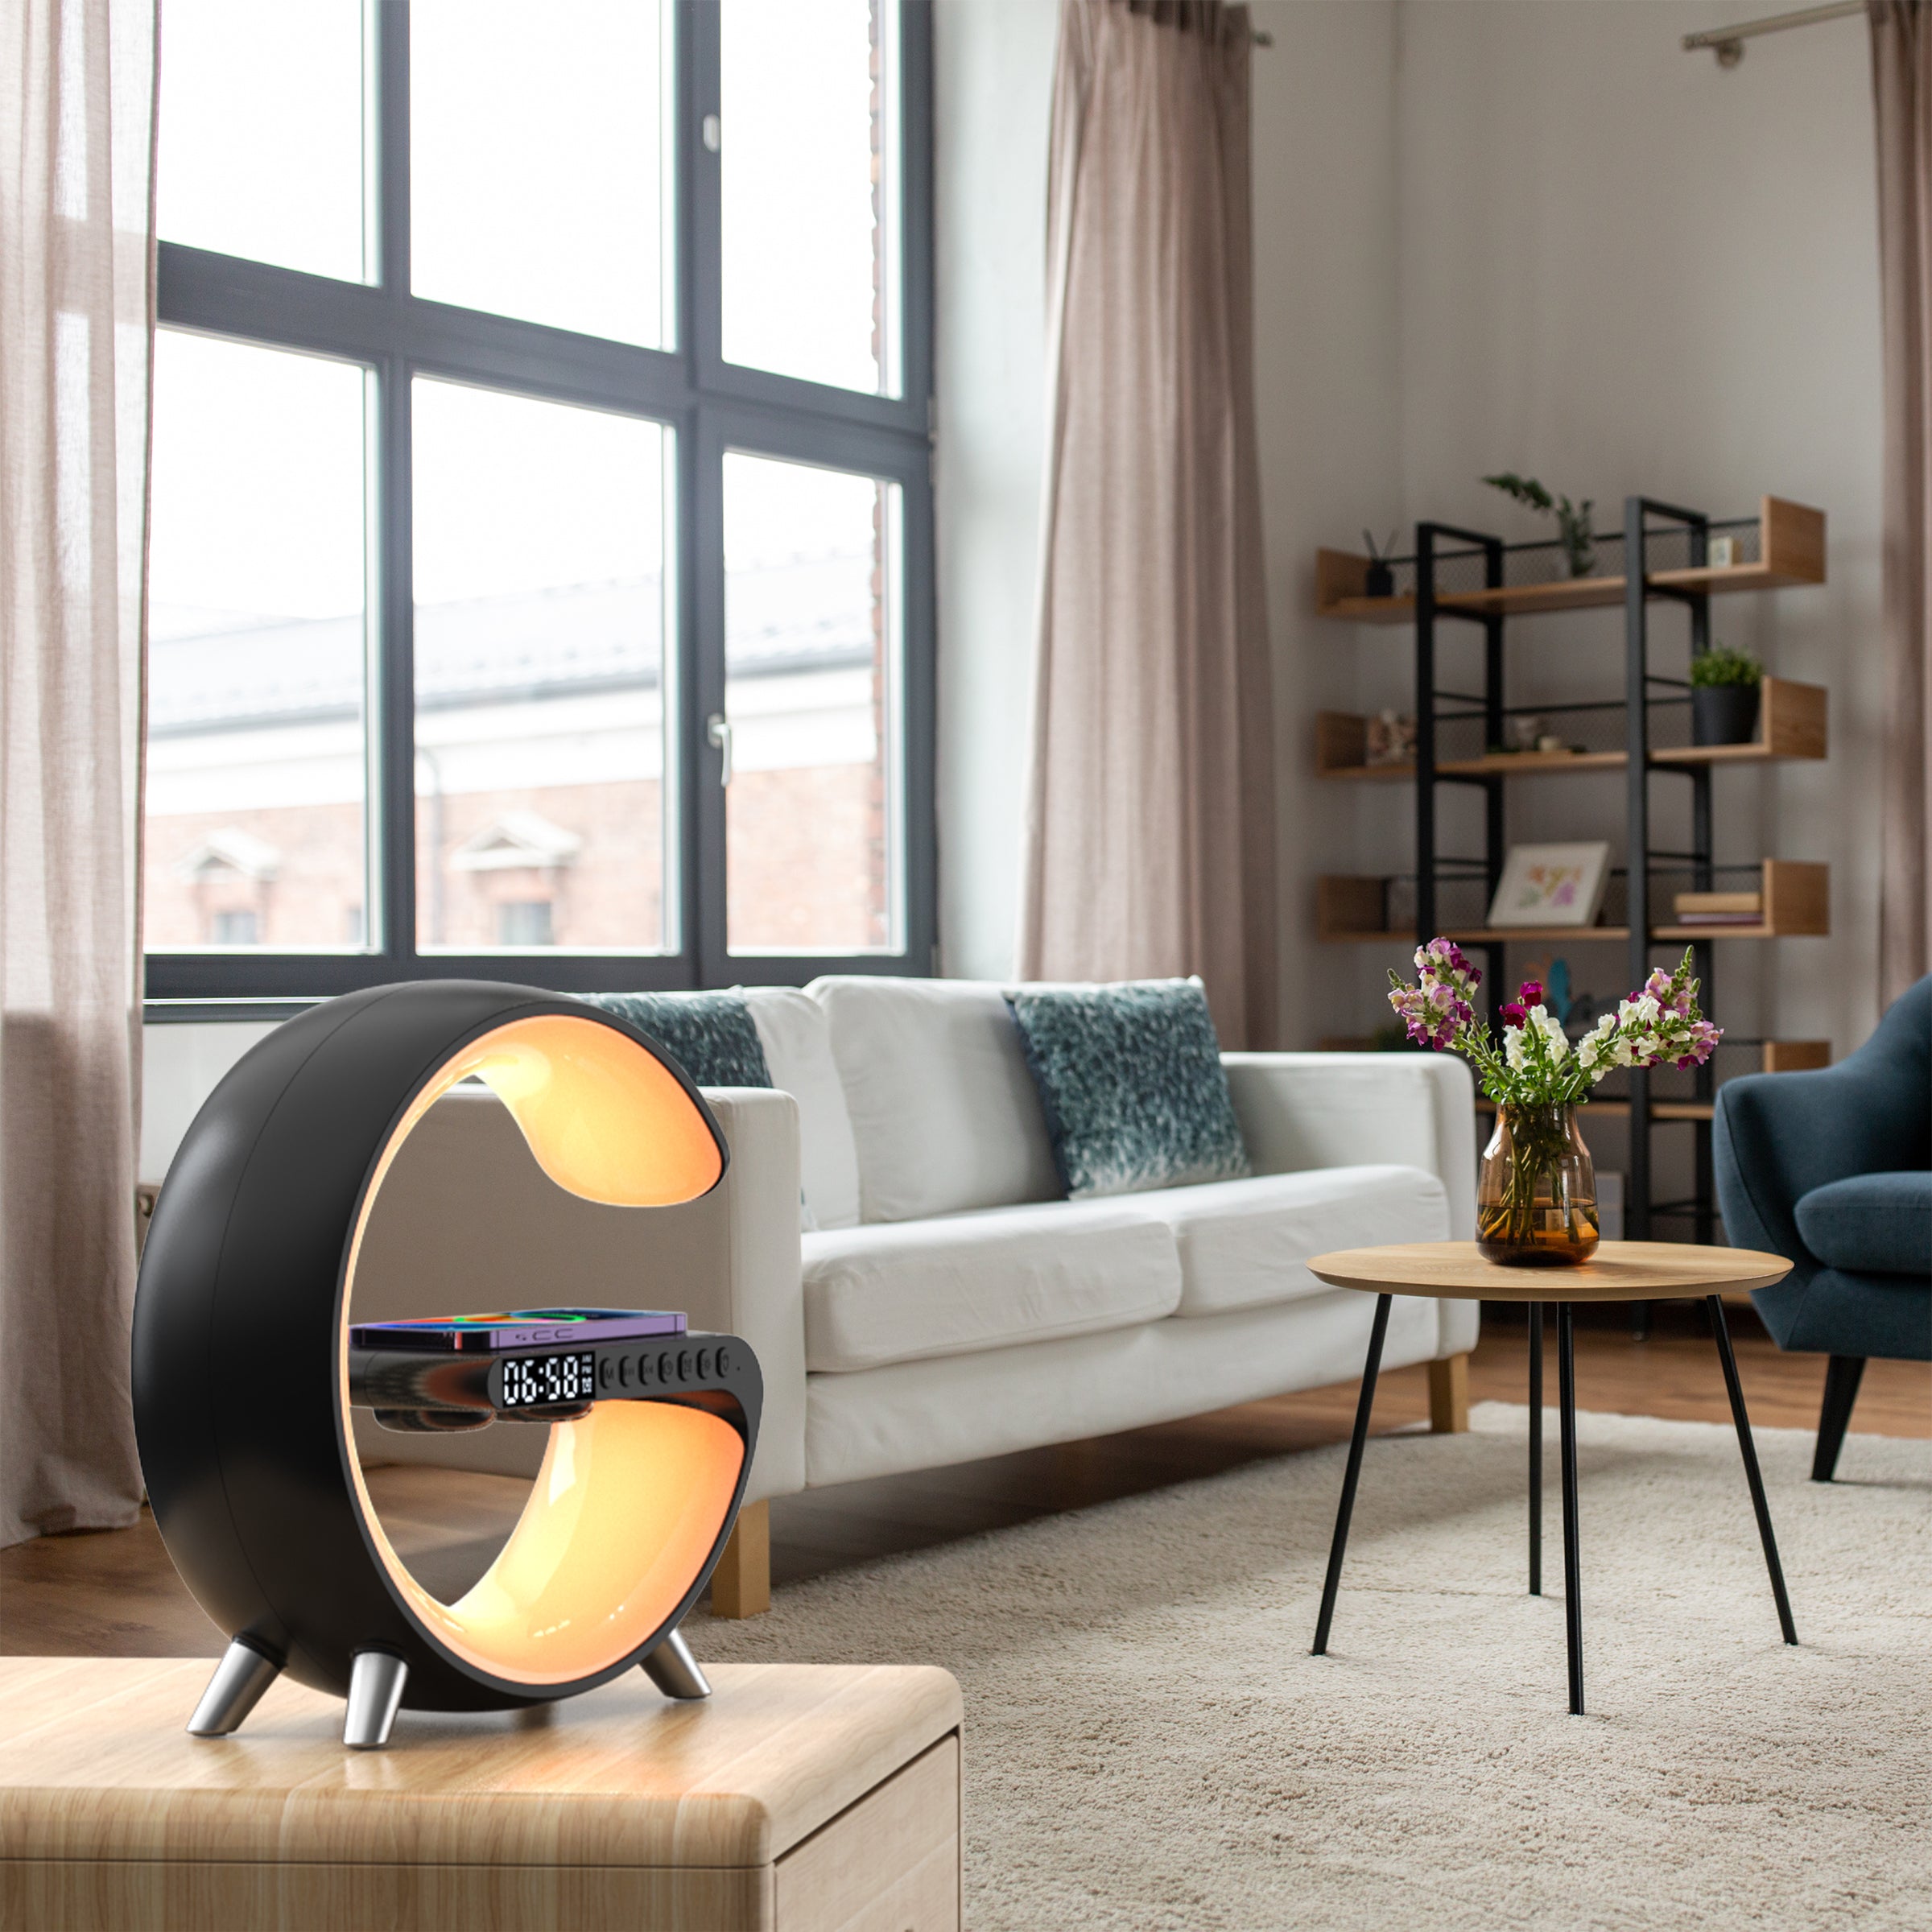 4 In 1 Intelli Sunrise Smart Lamp | Yedwo Design